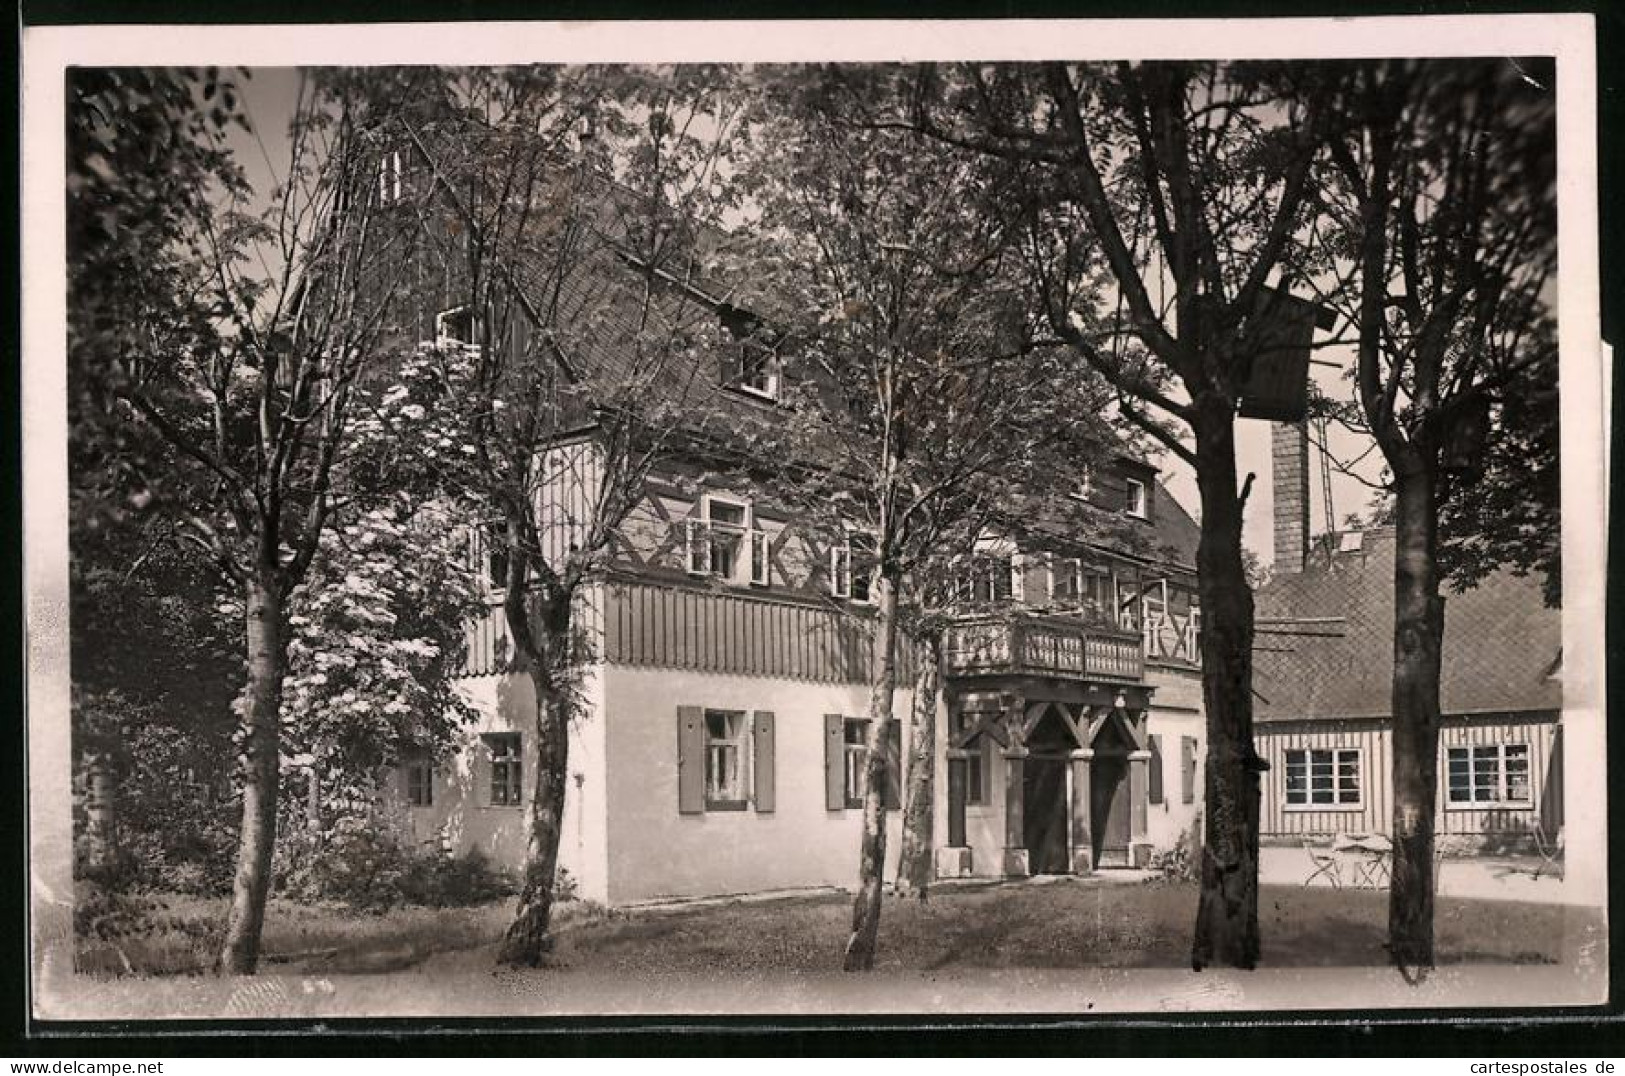 Fotografie Brück & Sohn Meissen, Ansicht Schellerhau I. Erzg., Partie An Der Gaststätte Gebirgshof  - Orte